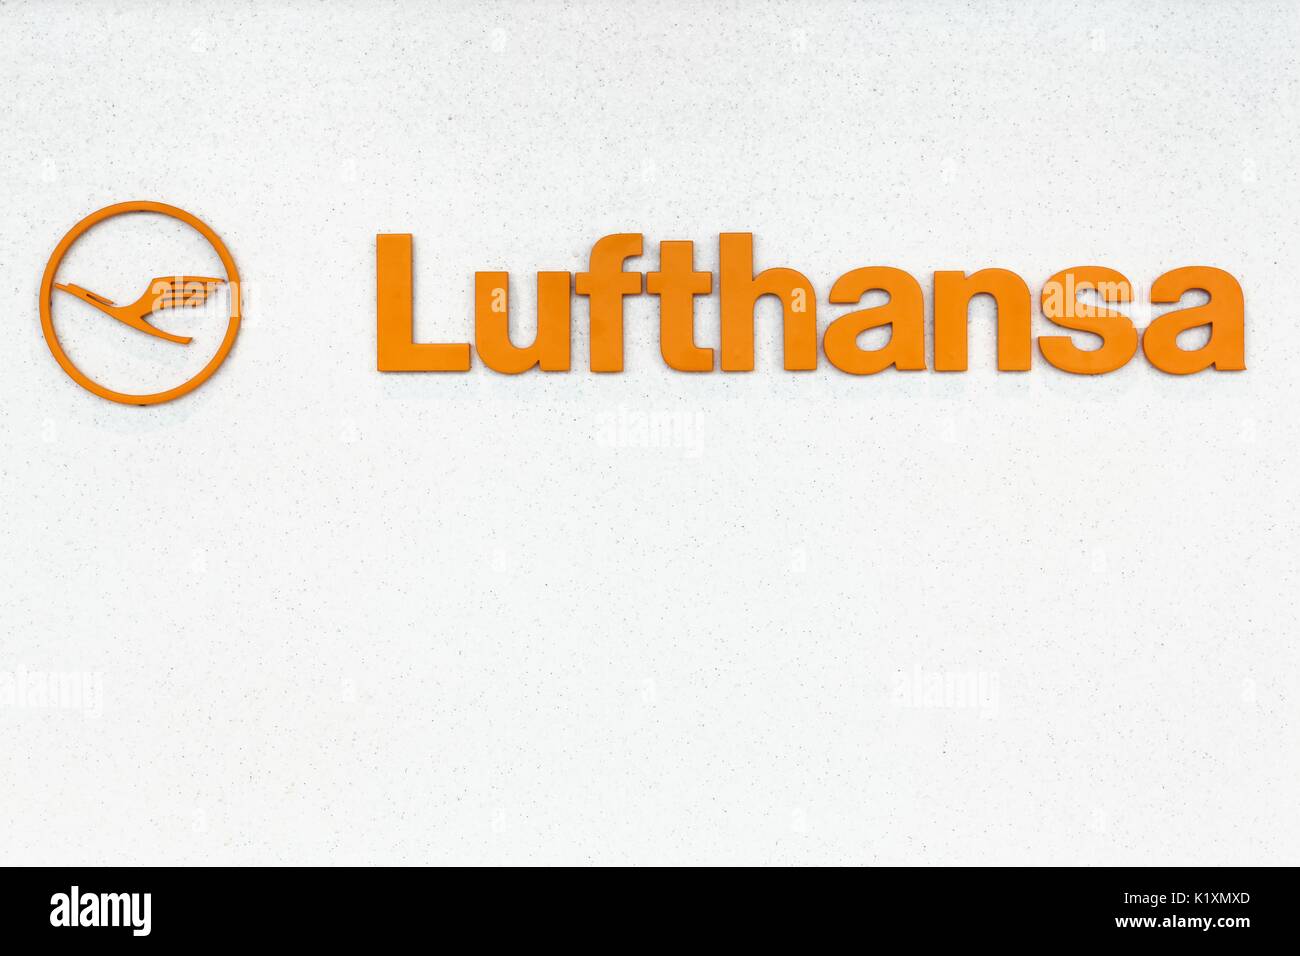 Francfort, Allemagne - 30 juillet 2017 : le logo de Lufthansa à l'aéroport de Francfort sur le mur.Lufthansa est une compagnie aérienne allemande et aussi la plus grande compagnie aérienne en Europe Banque D'Images